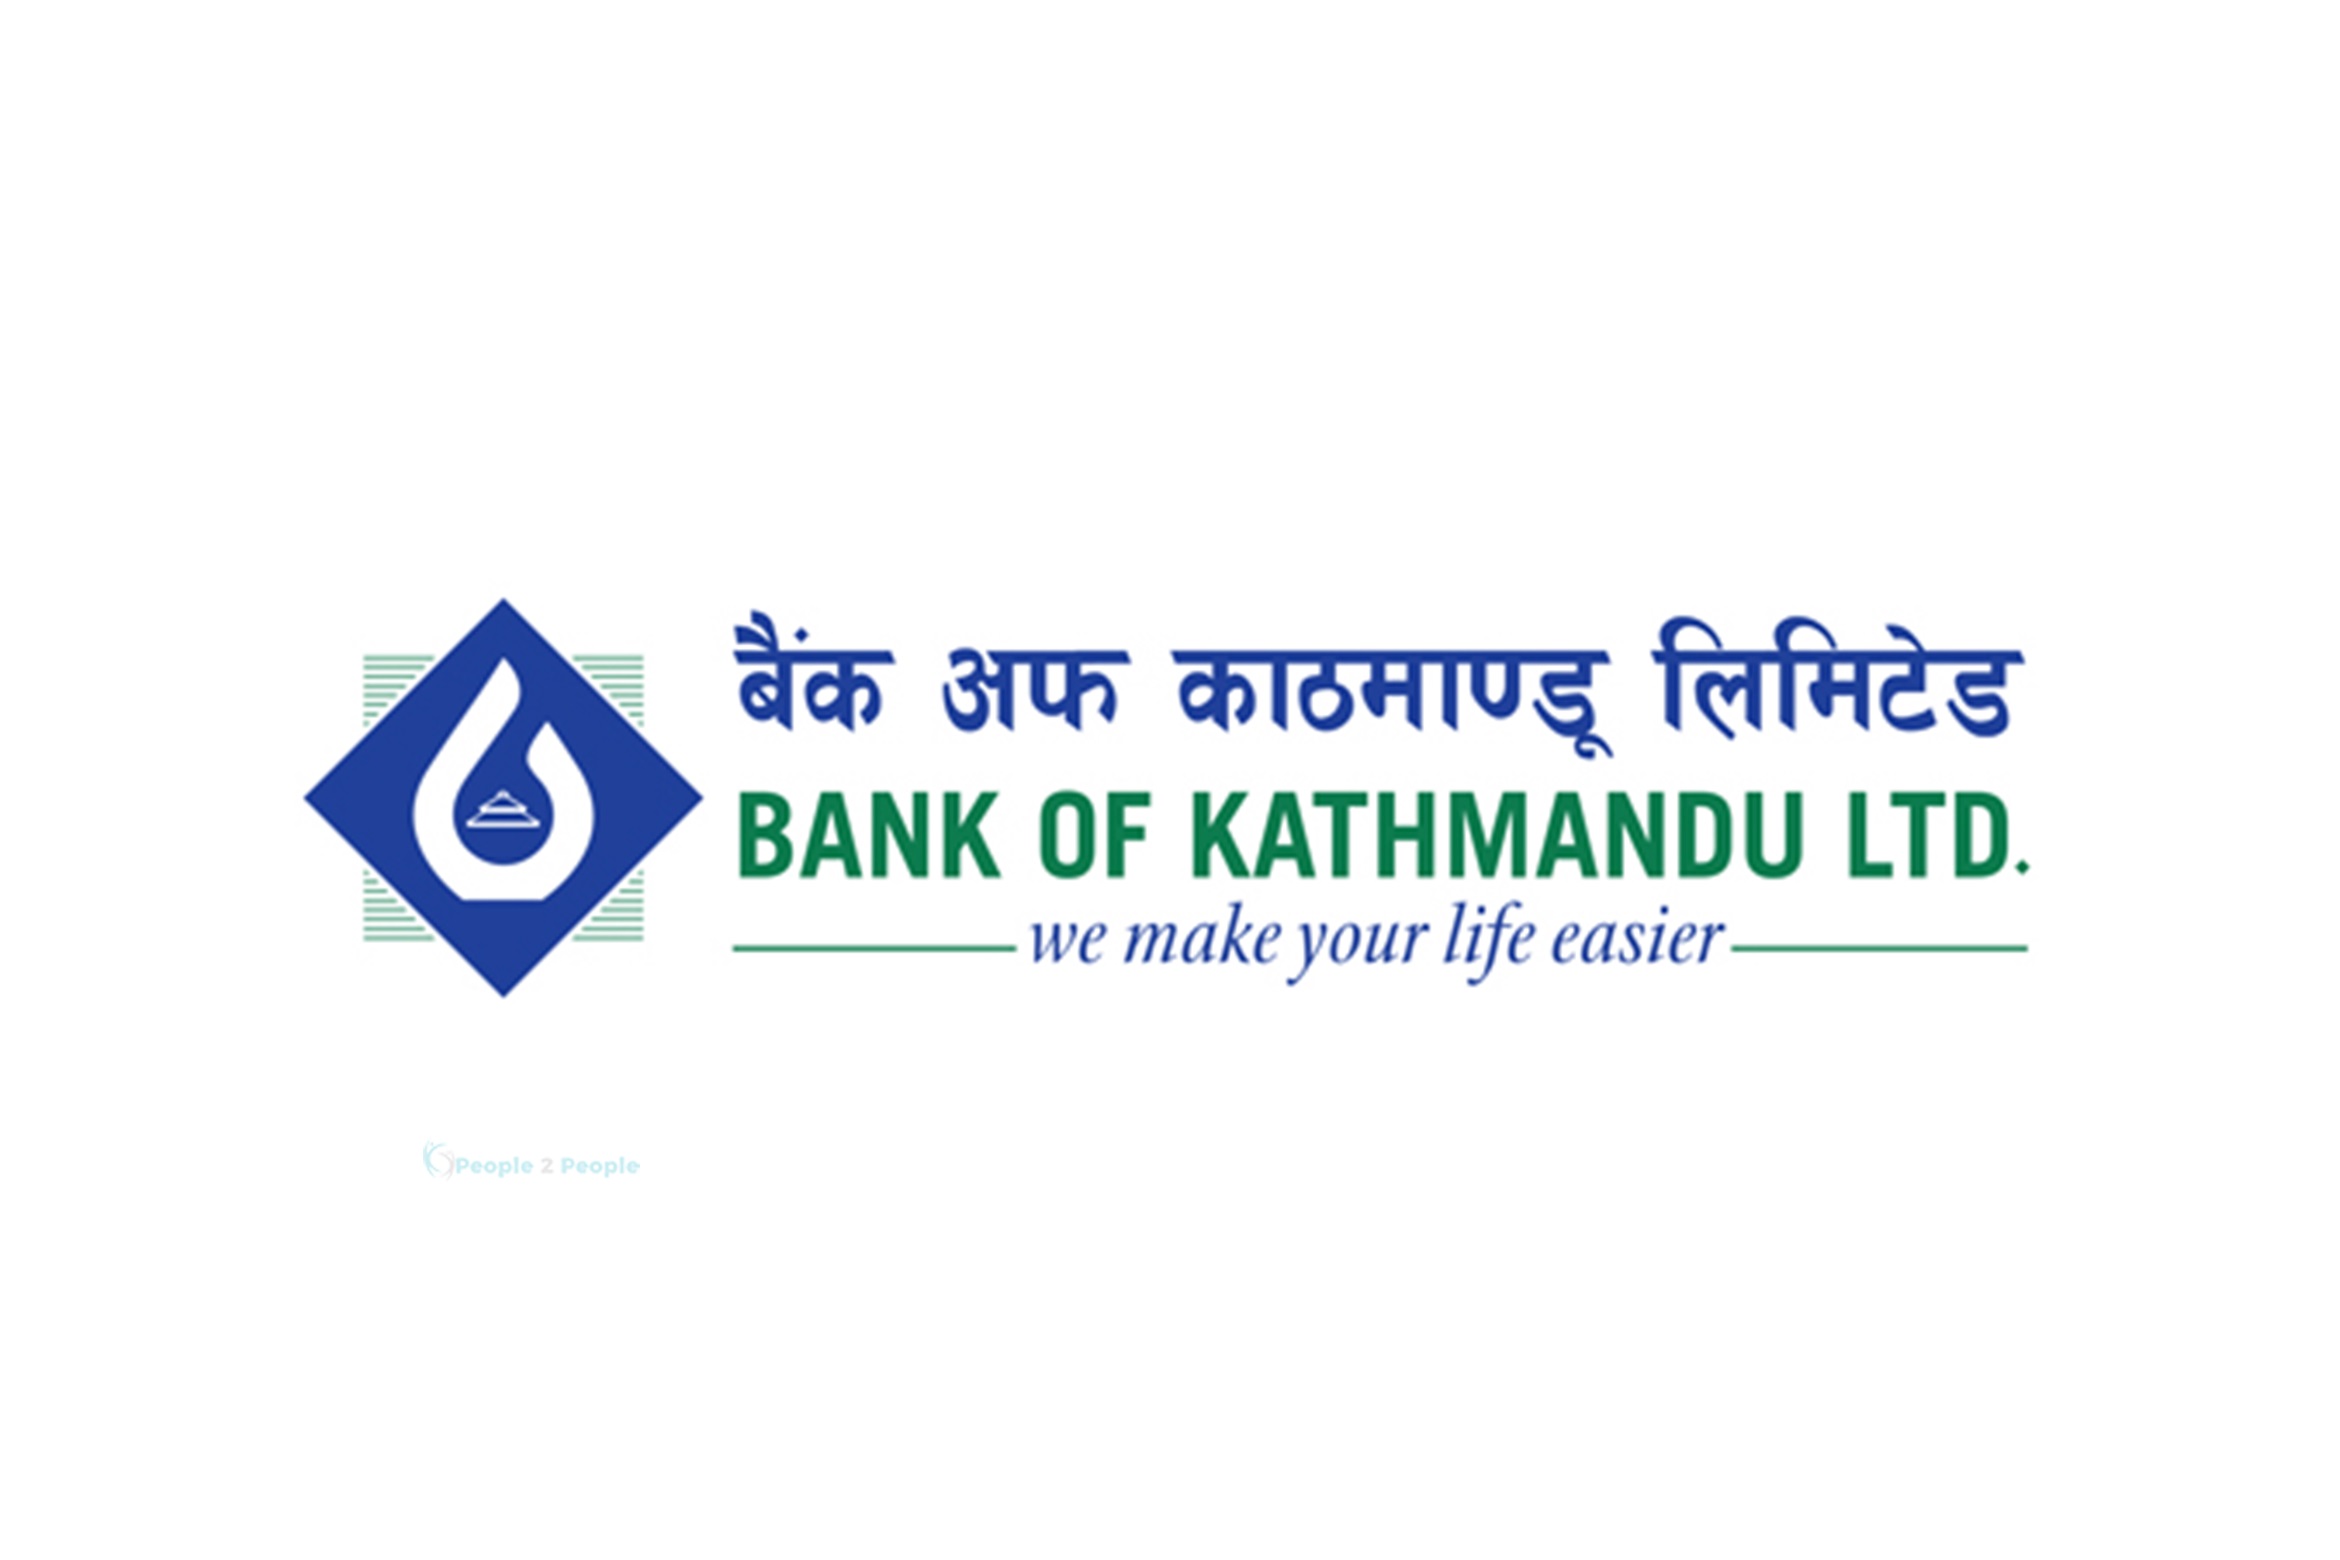 बैंक अफ काठमाण्डूको डिबेञ्चर २०८६ को सार्वजनिक निष्काशन बन्द 